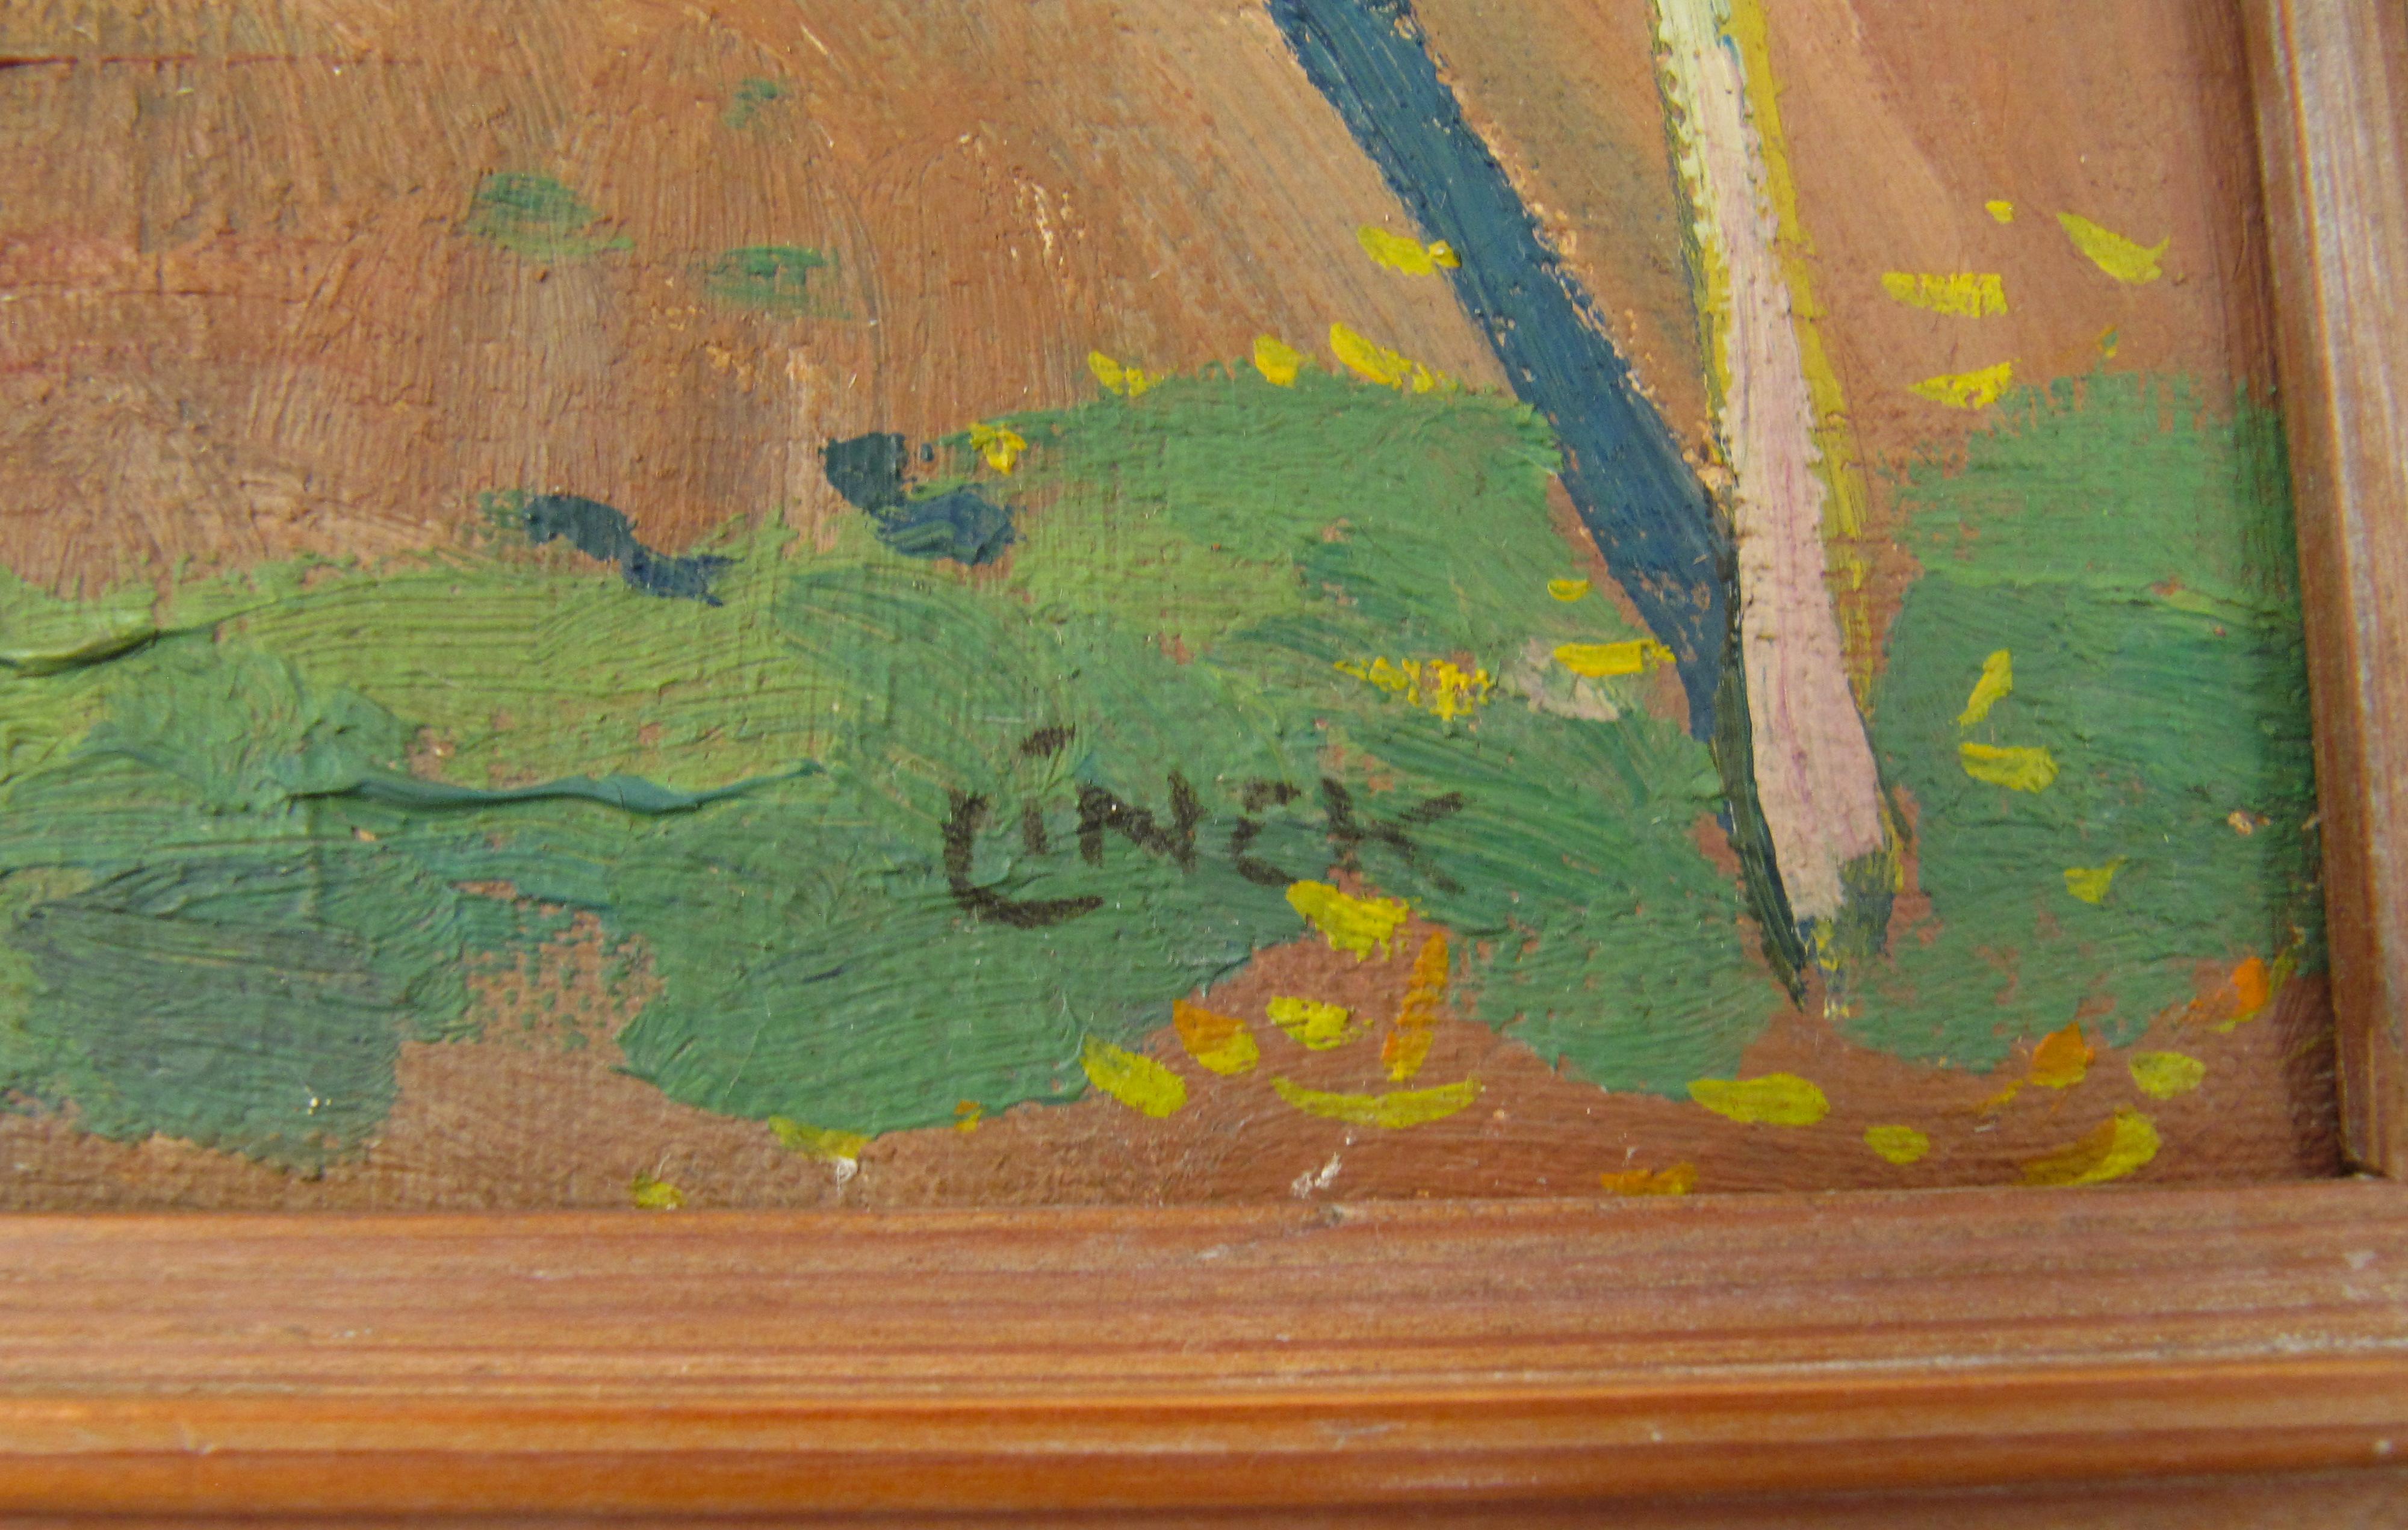 Ernst Link
(Suisse, ∗ 14 octobre 1874 à Windisch, † 29 juin 1935 à Berne)

Stöckli avec corde à linge

•	Peinture à l'huile sur toile environ 25,5 x 26,5 cm
•	Cadre en pin d'environ 34,5 x 35,5 cm (signes évidents d'âge)
•	Signé en bas à